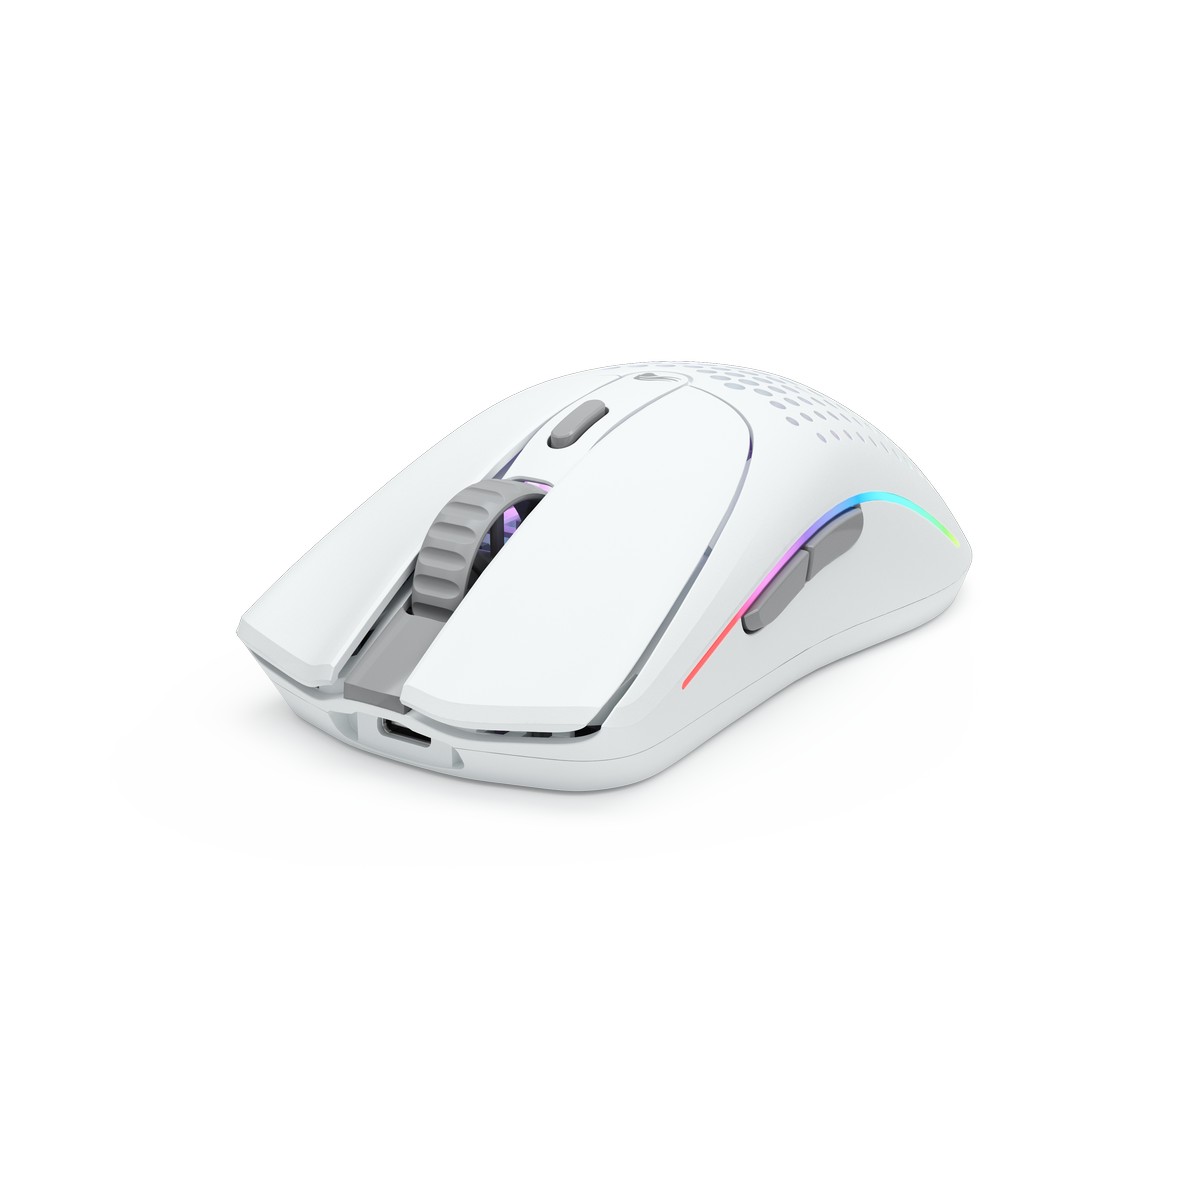 Glorious - Glorious Model O 2 Wireless RGB Optical Gaming Mouse - Matte White (GLO-MS-OWV2-MW)